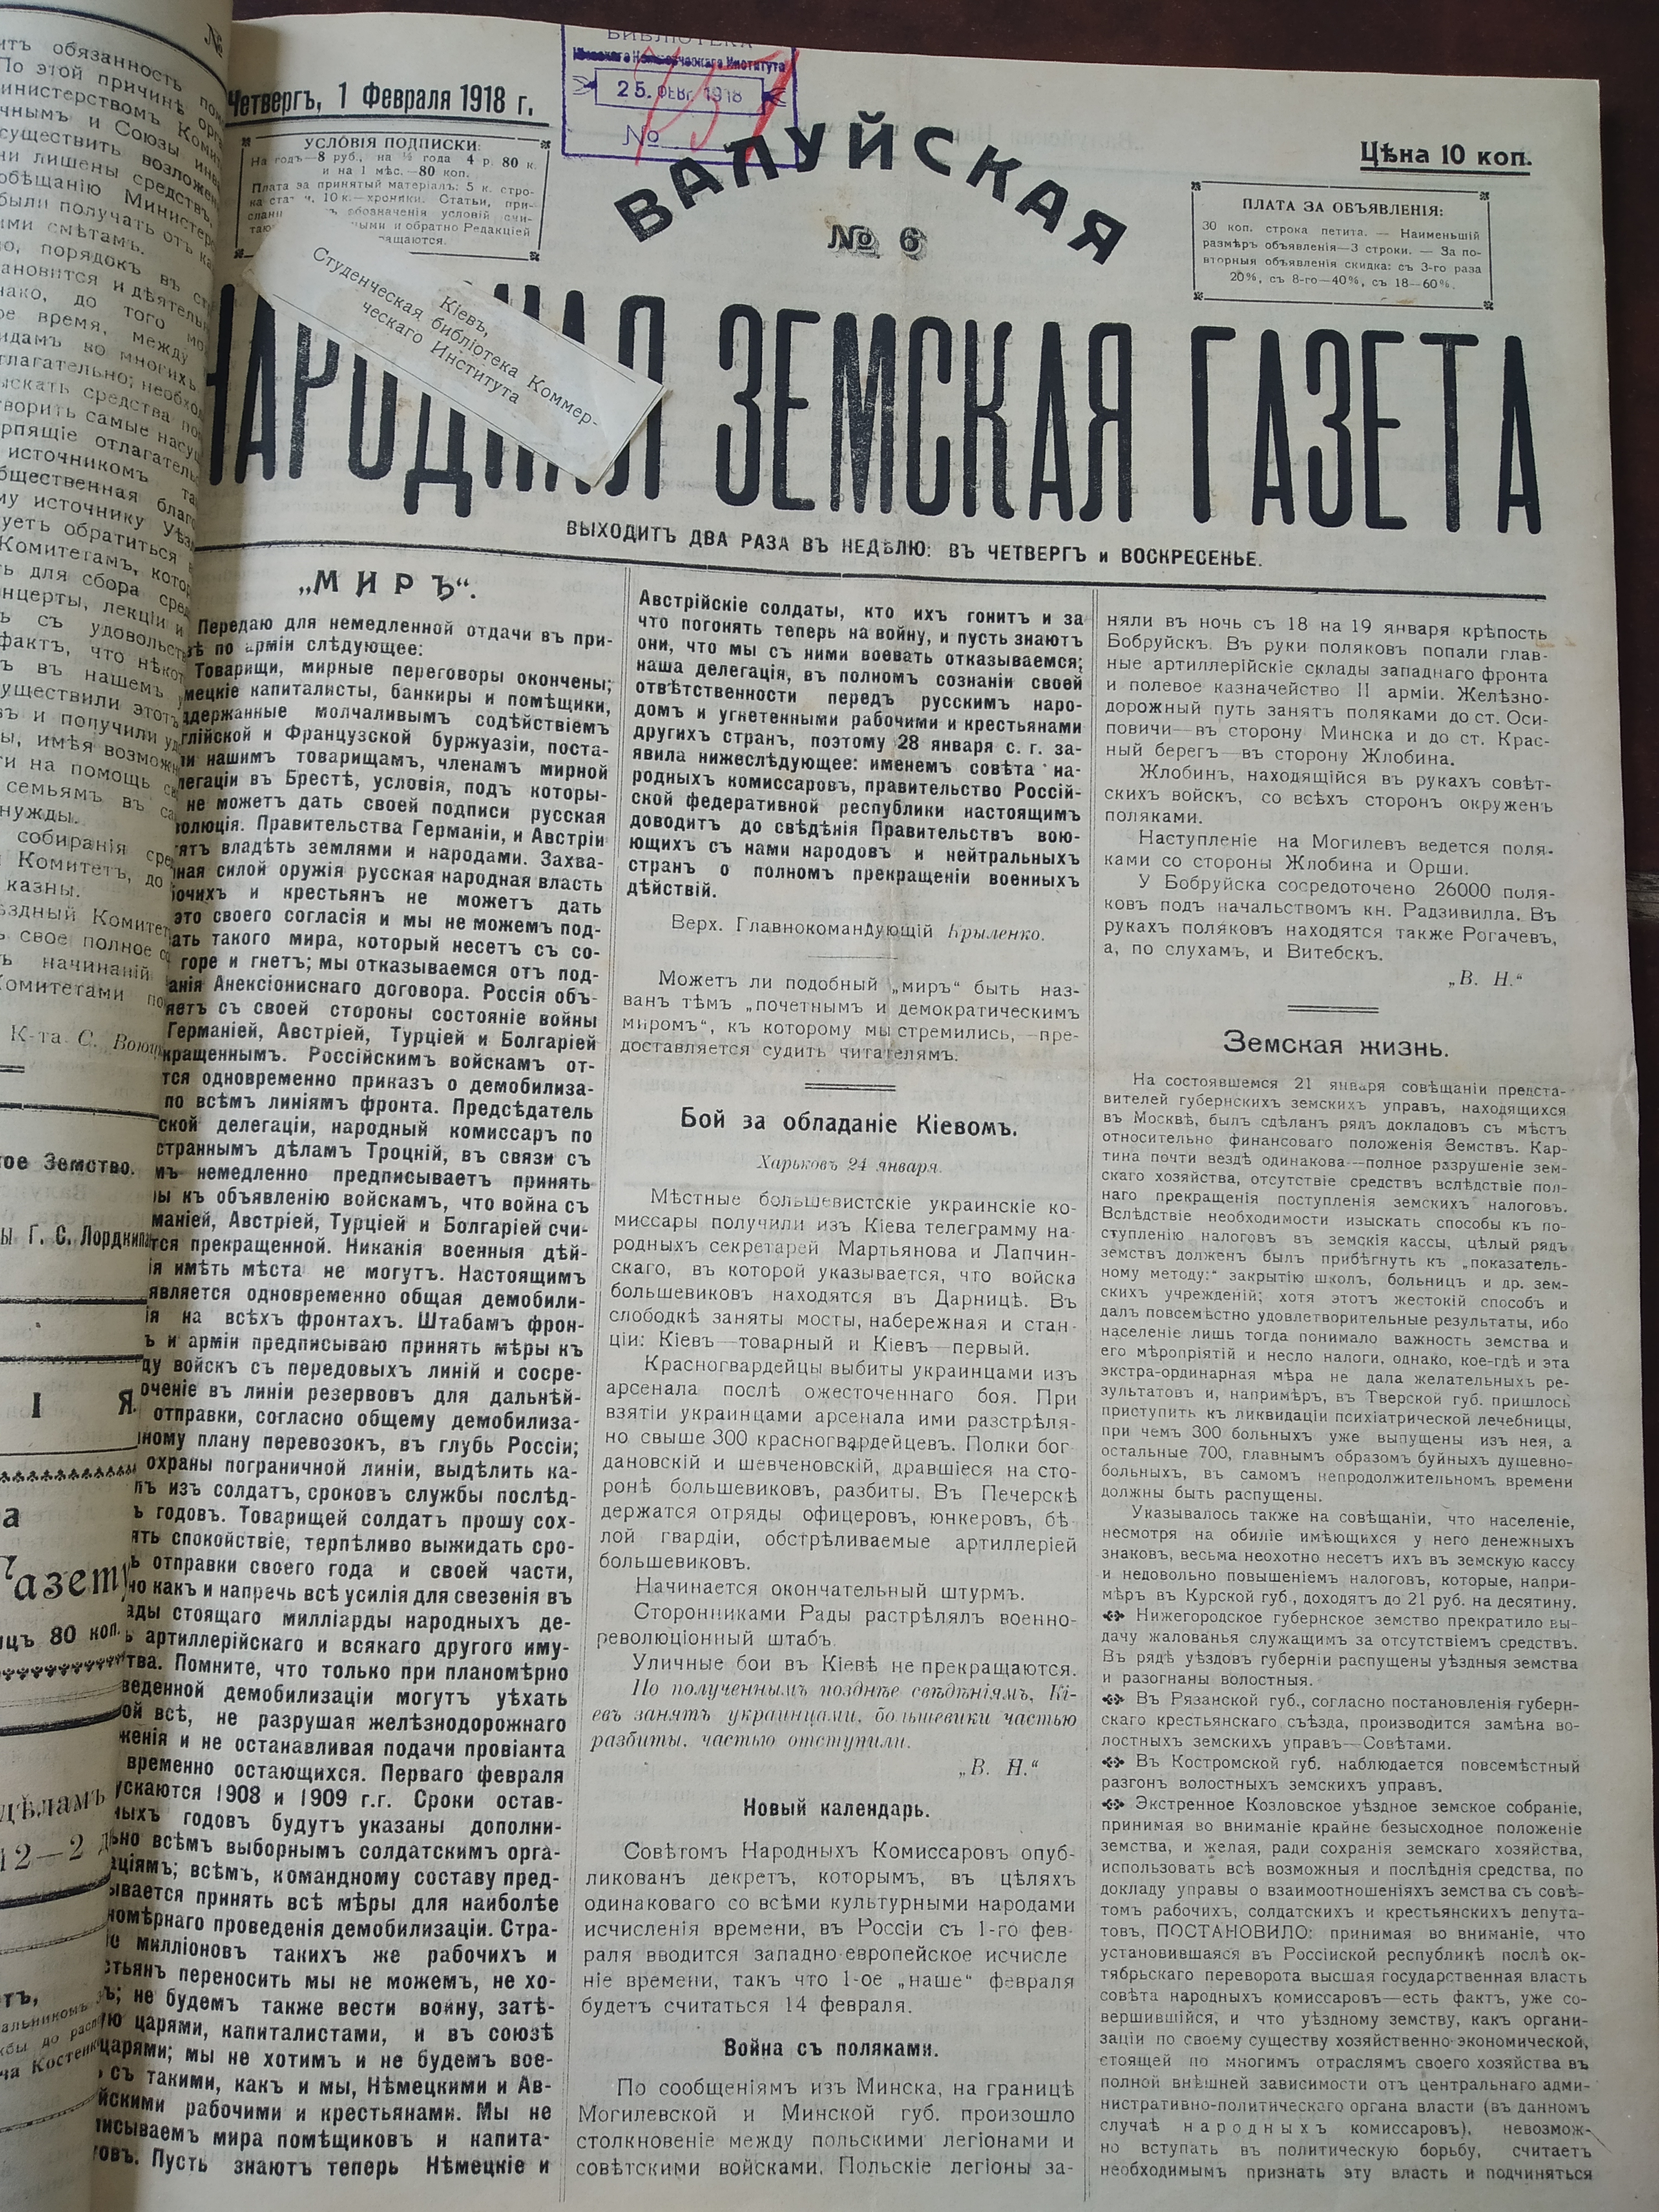 [Валуйская народная земская газета, 1918 год]